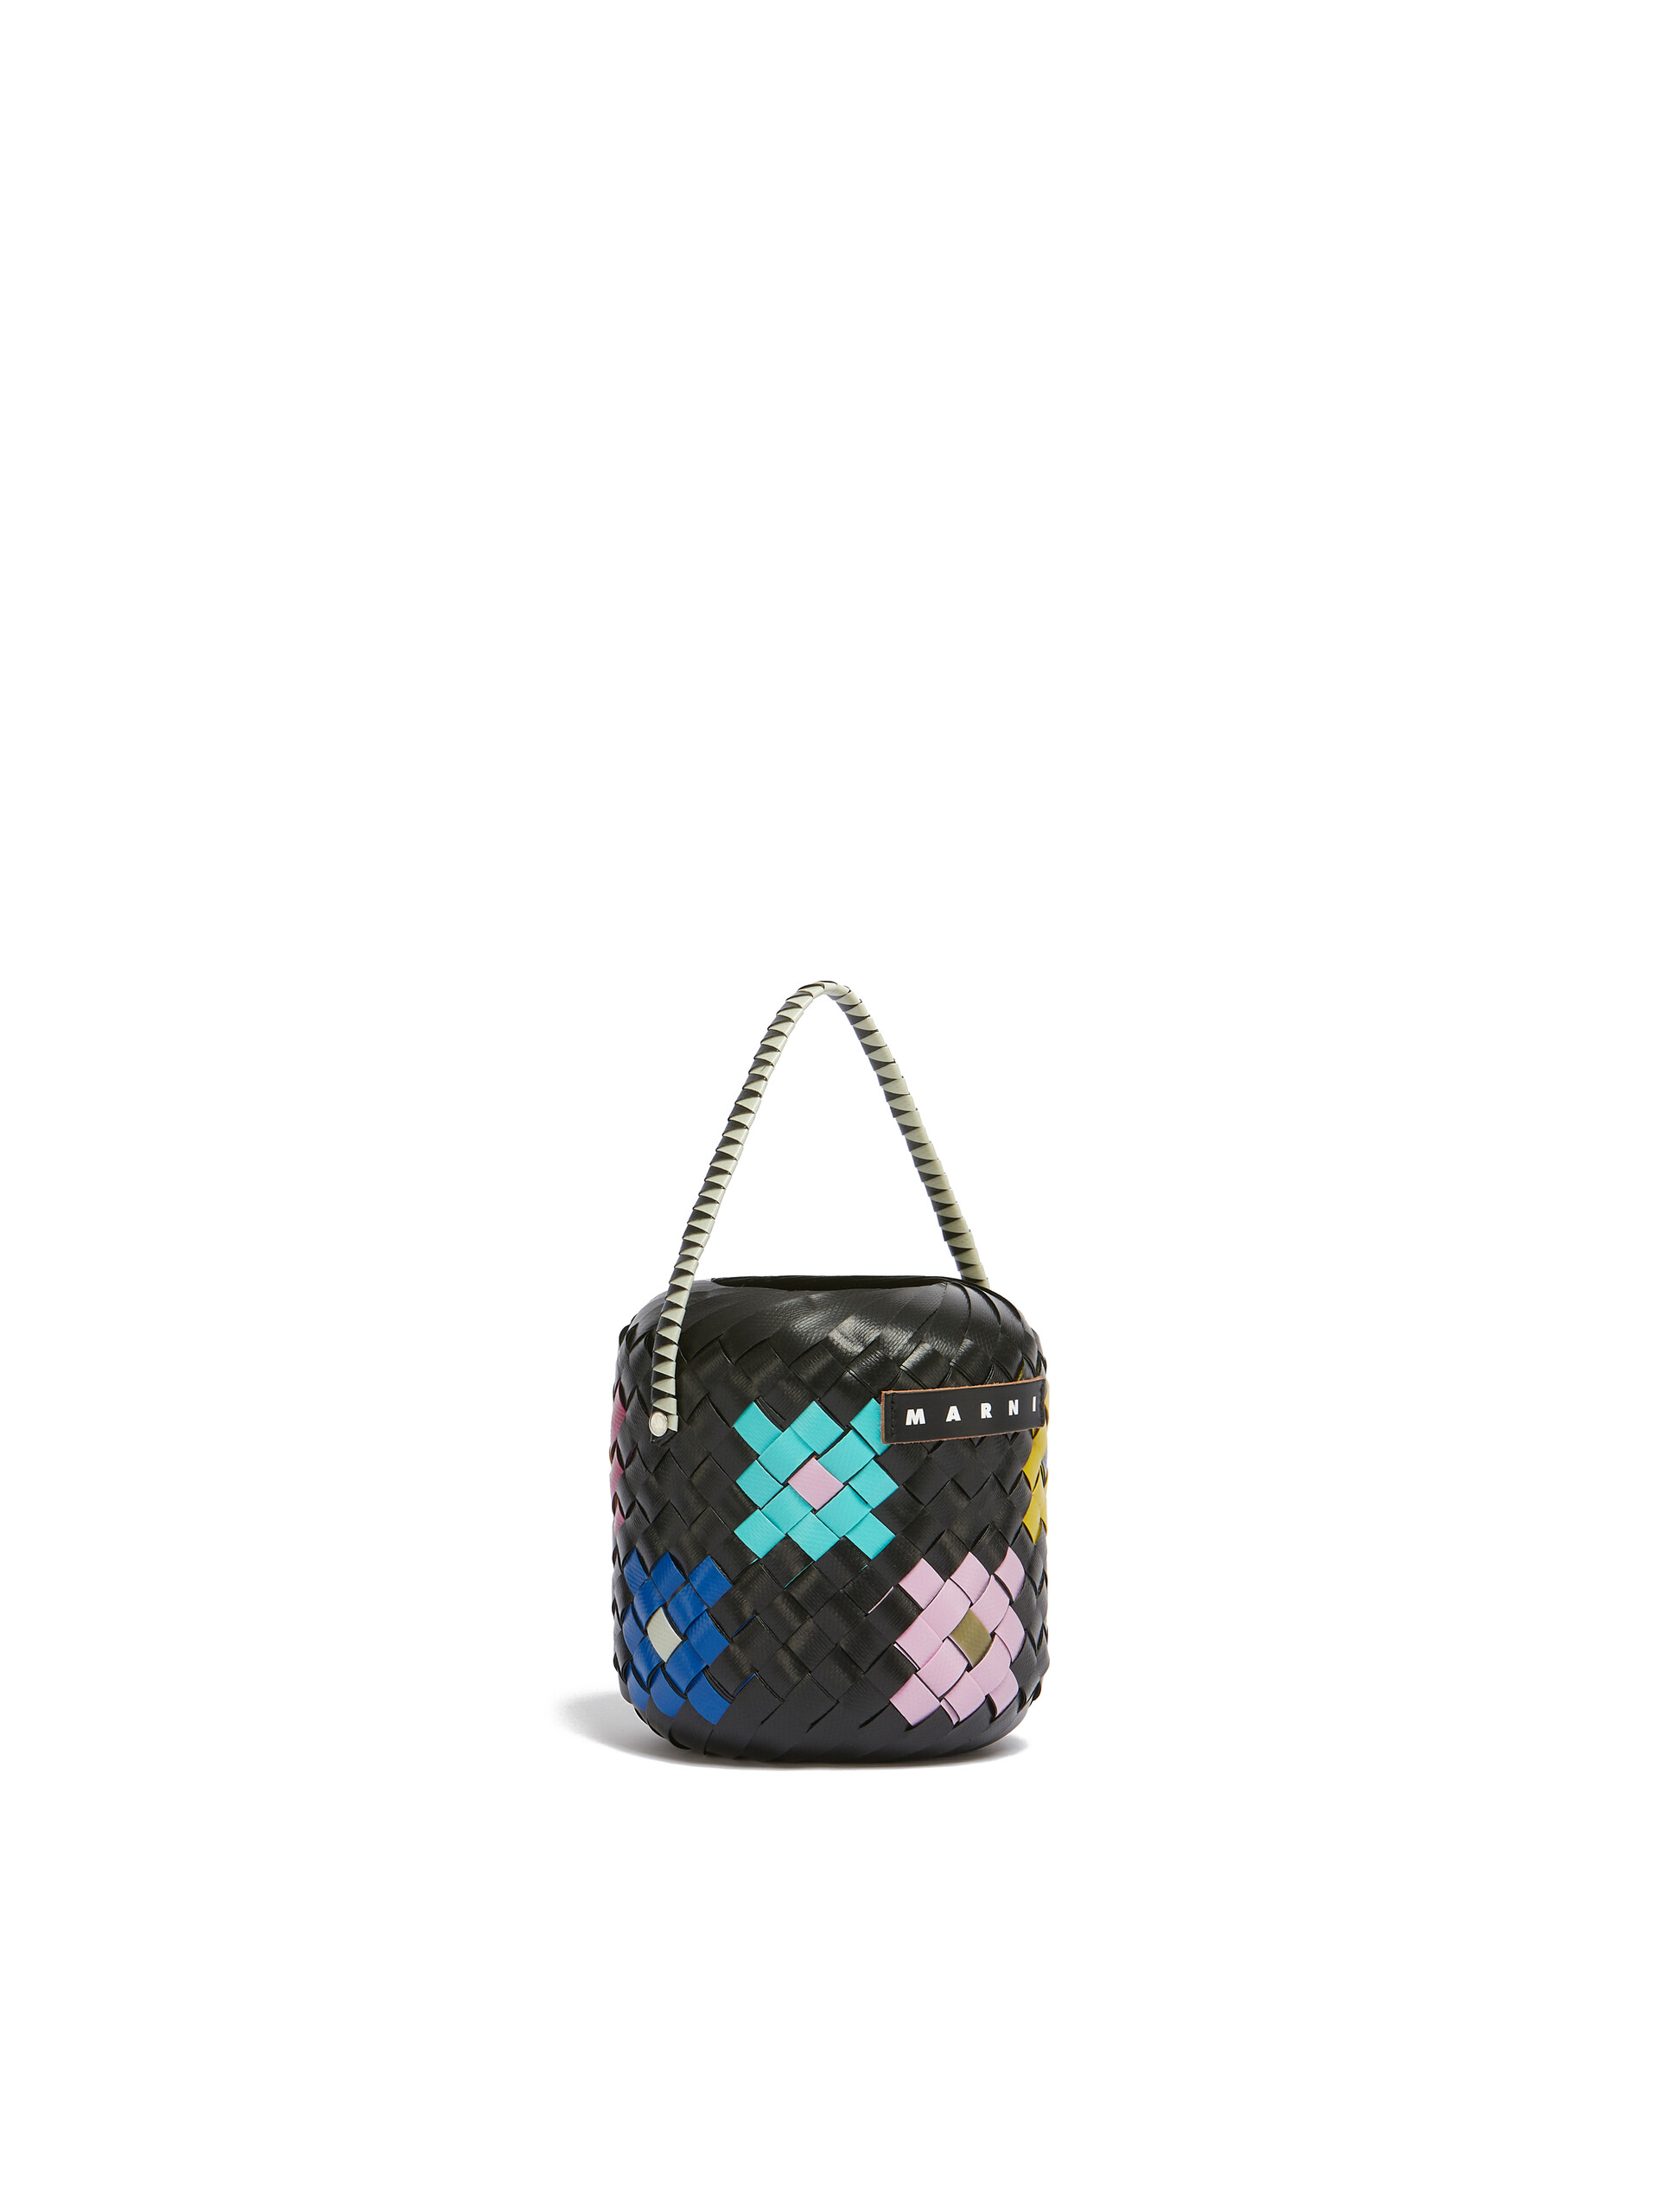 KLEINE MARNI MARKET BEUTELTASCHE mit schwarzer Blume - Shopper - Image 2